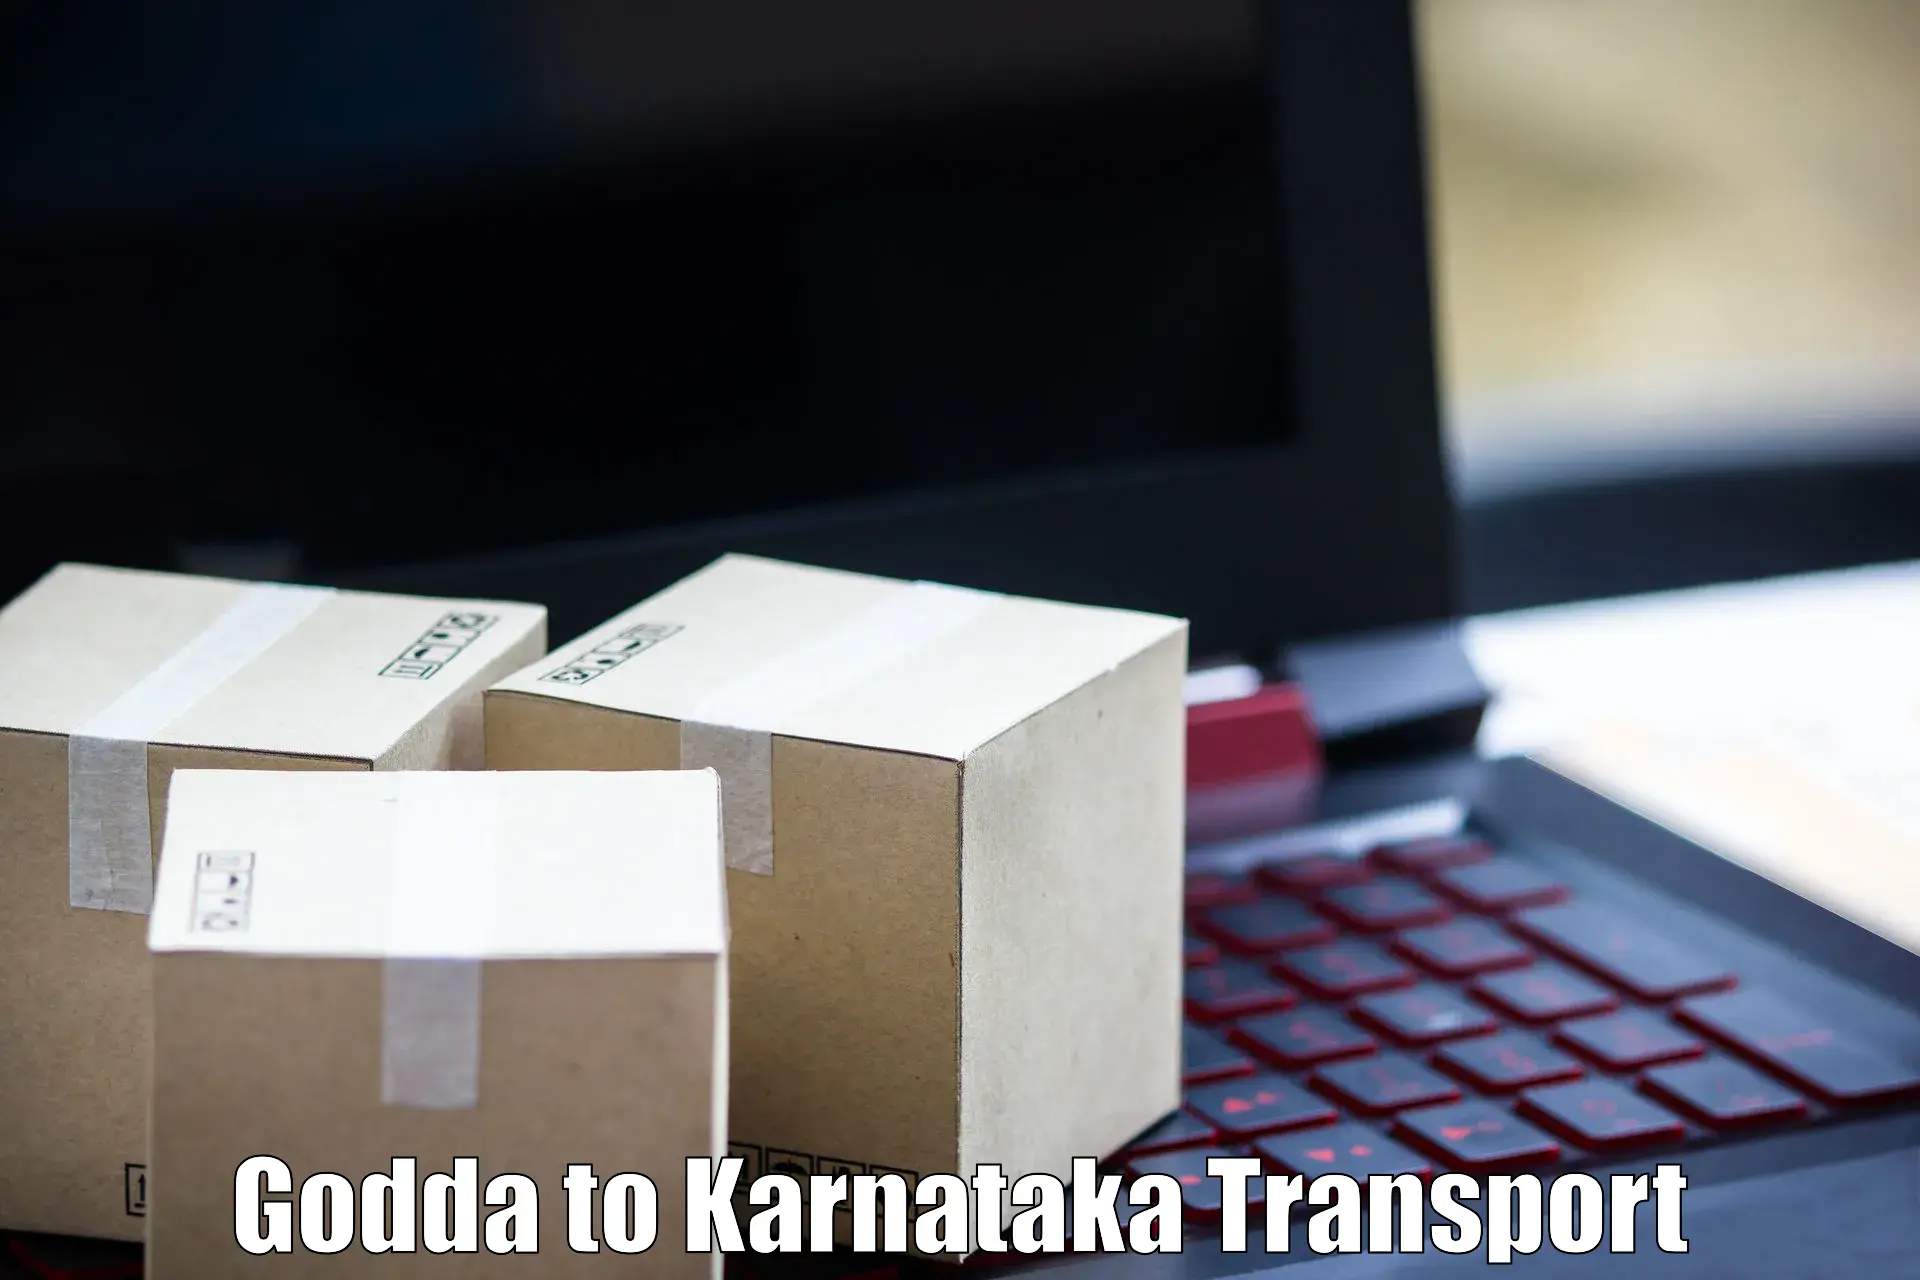 Vehicle parcel service Godda to Bhadravathi